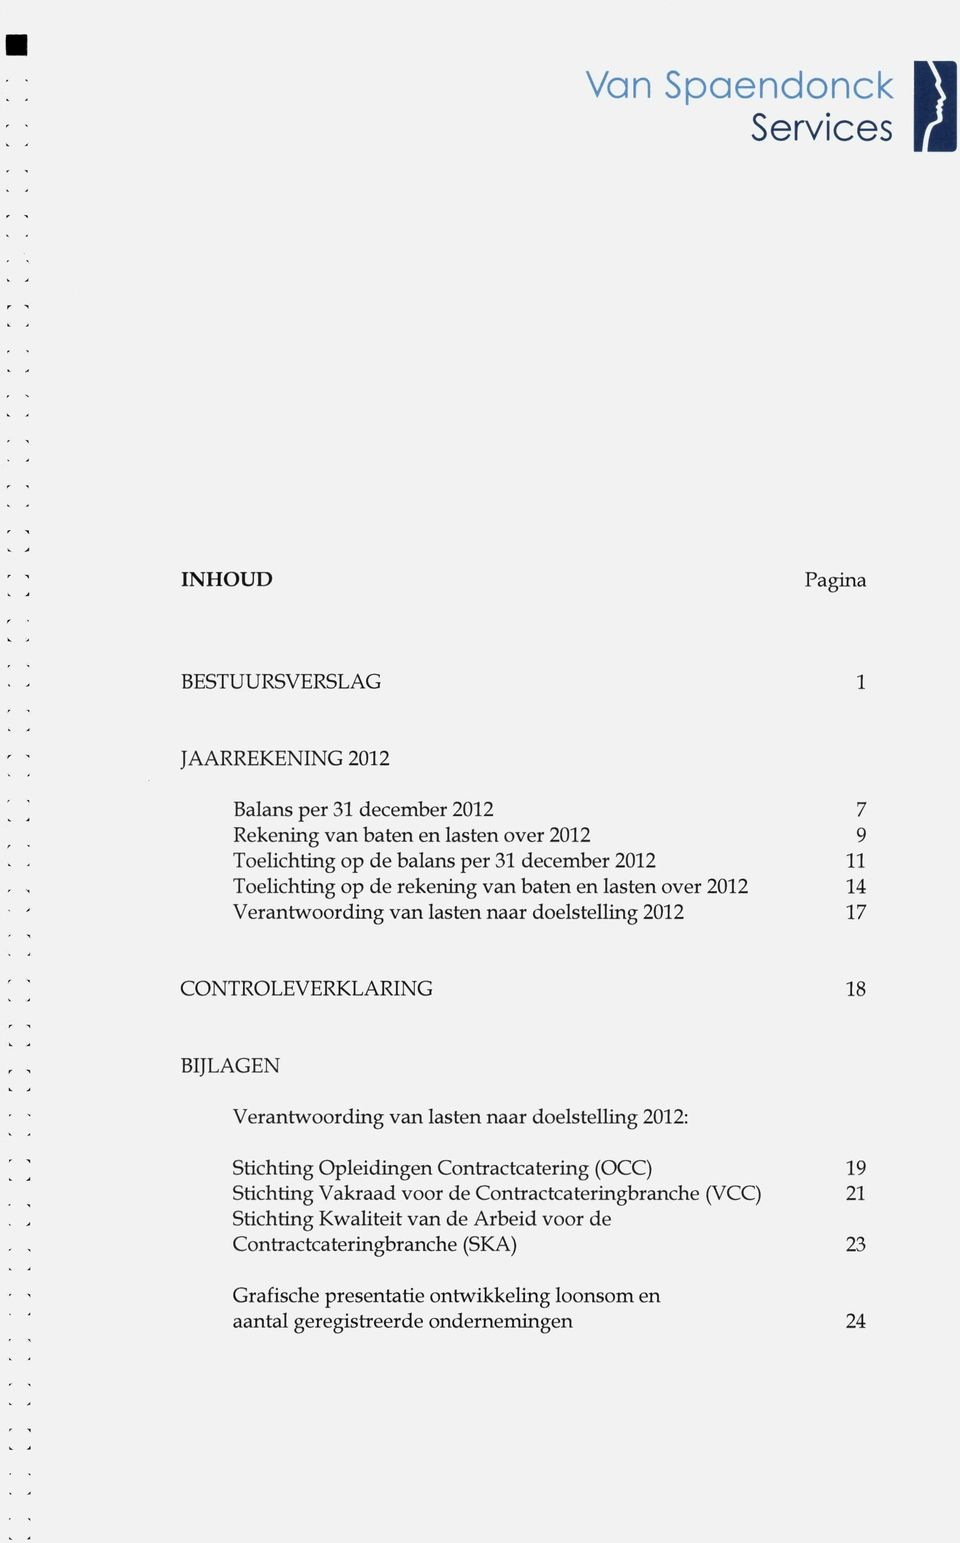 BIJLAGEN Verantw^oording van lasten naar doelstelling 2012: Stichting Opleidingen Contractcatering (OCC) 19 Stichting Vakraad voor de